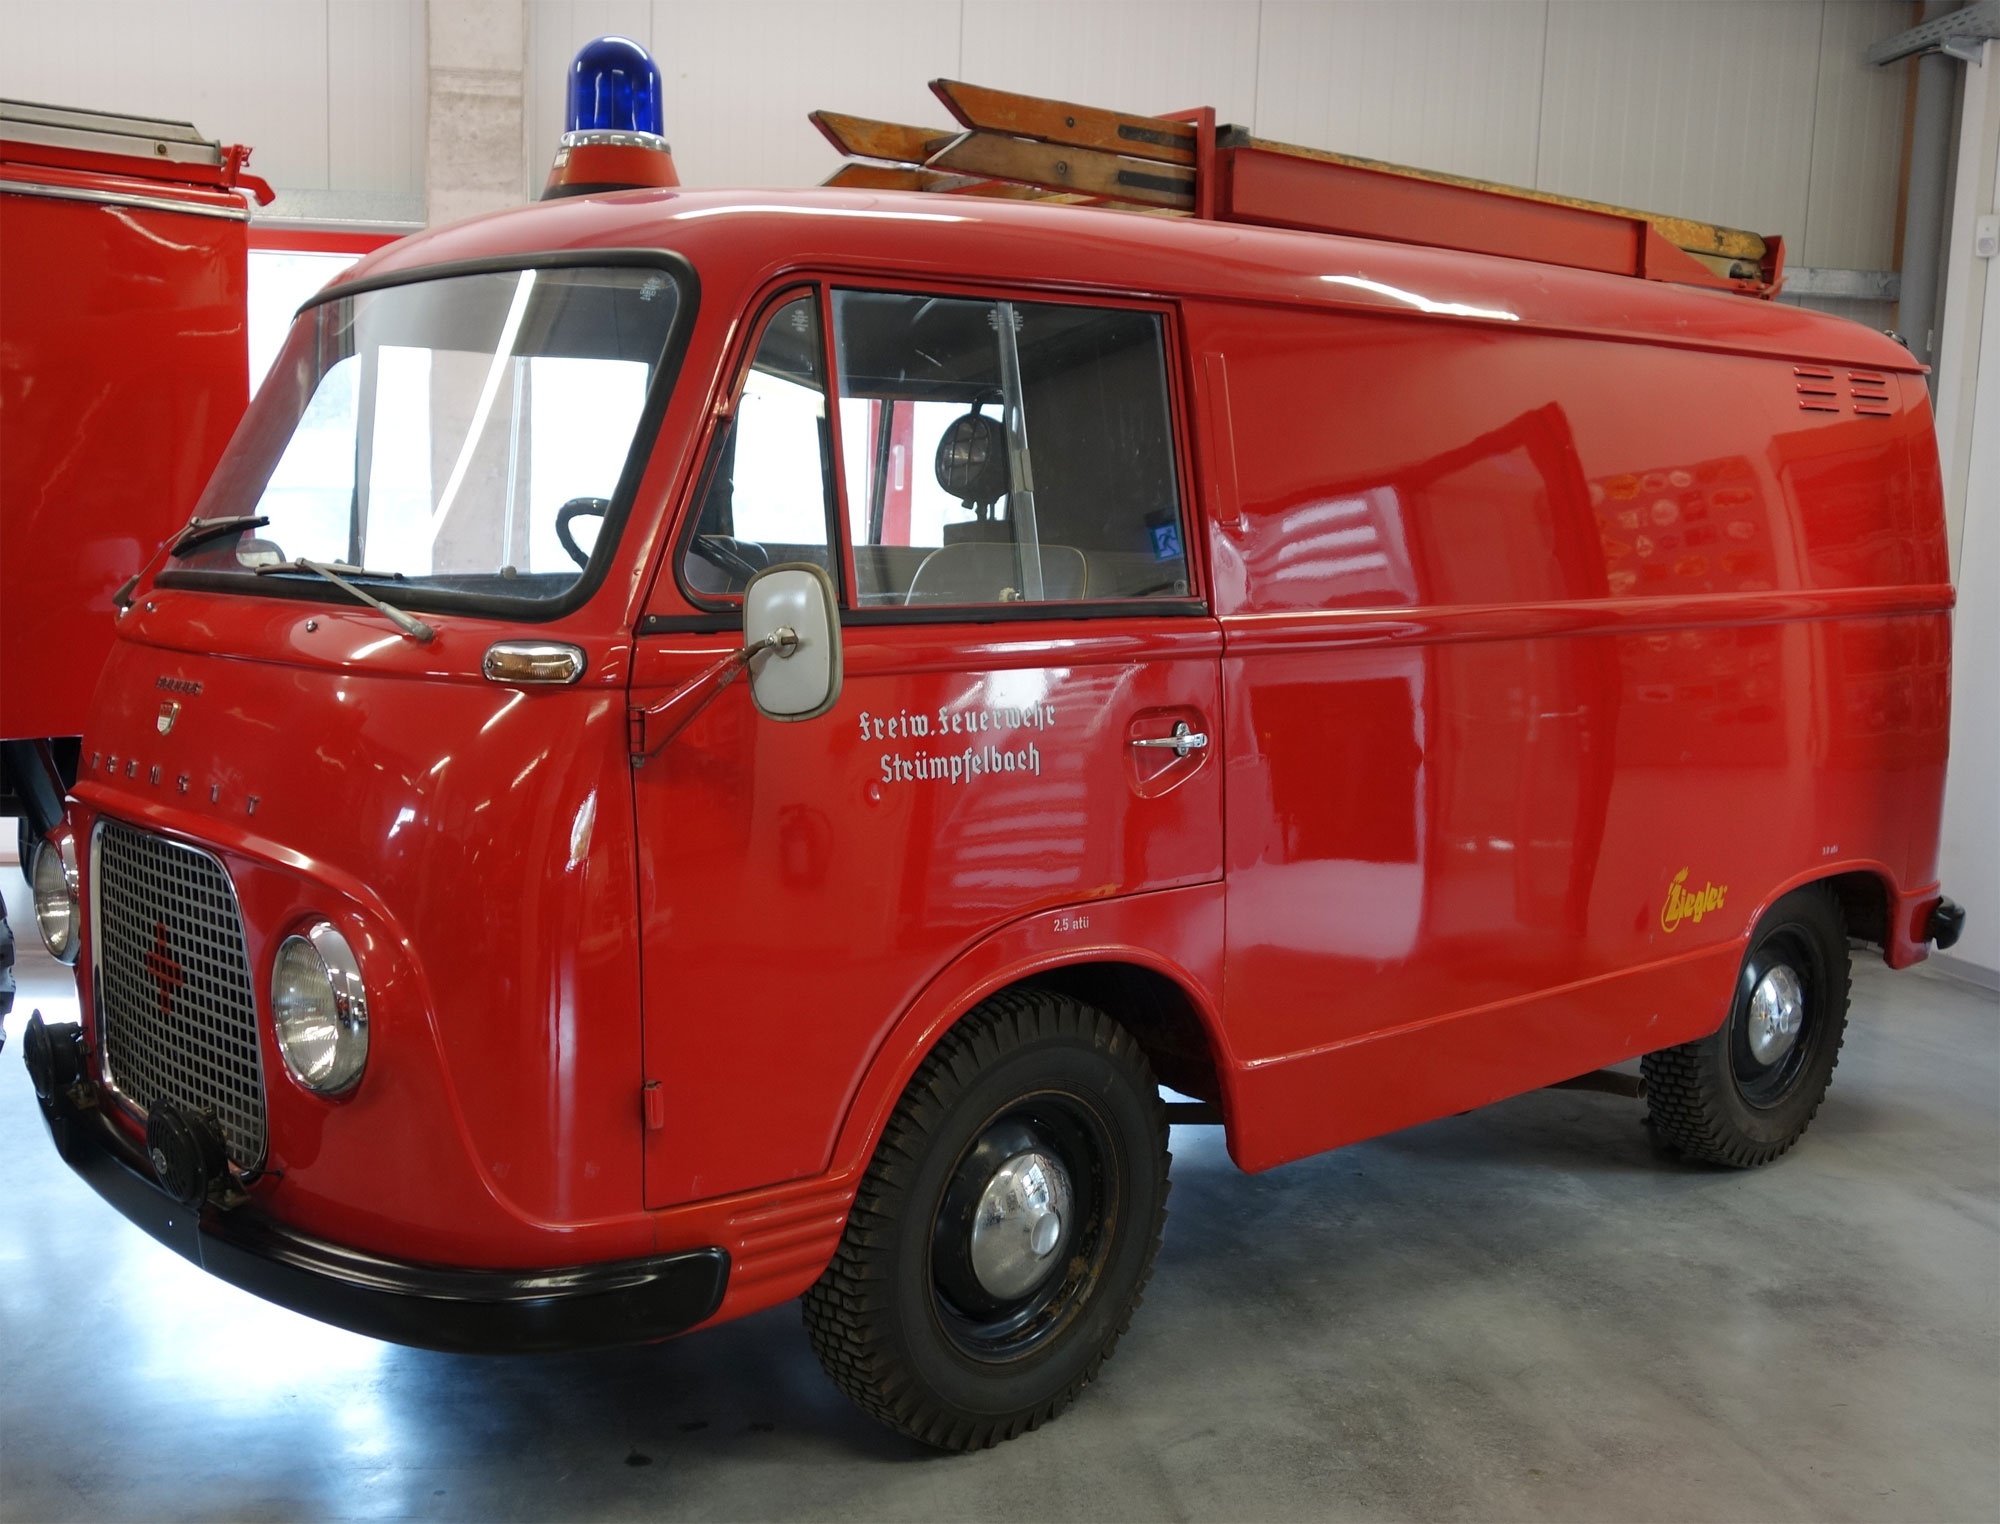 Tragkraftspritzenfahrzeug (Feuerwehrmuseum Winnenden CC BY)